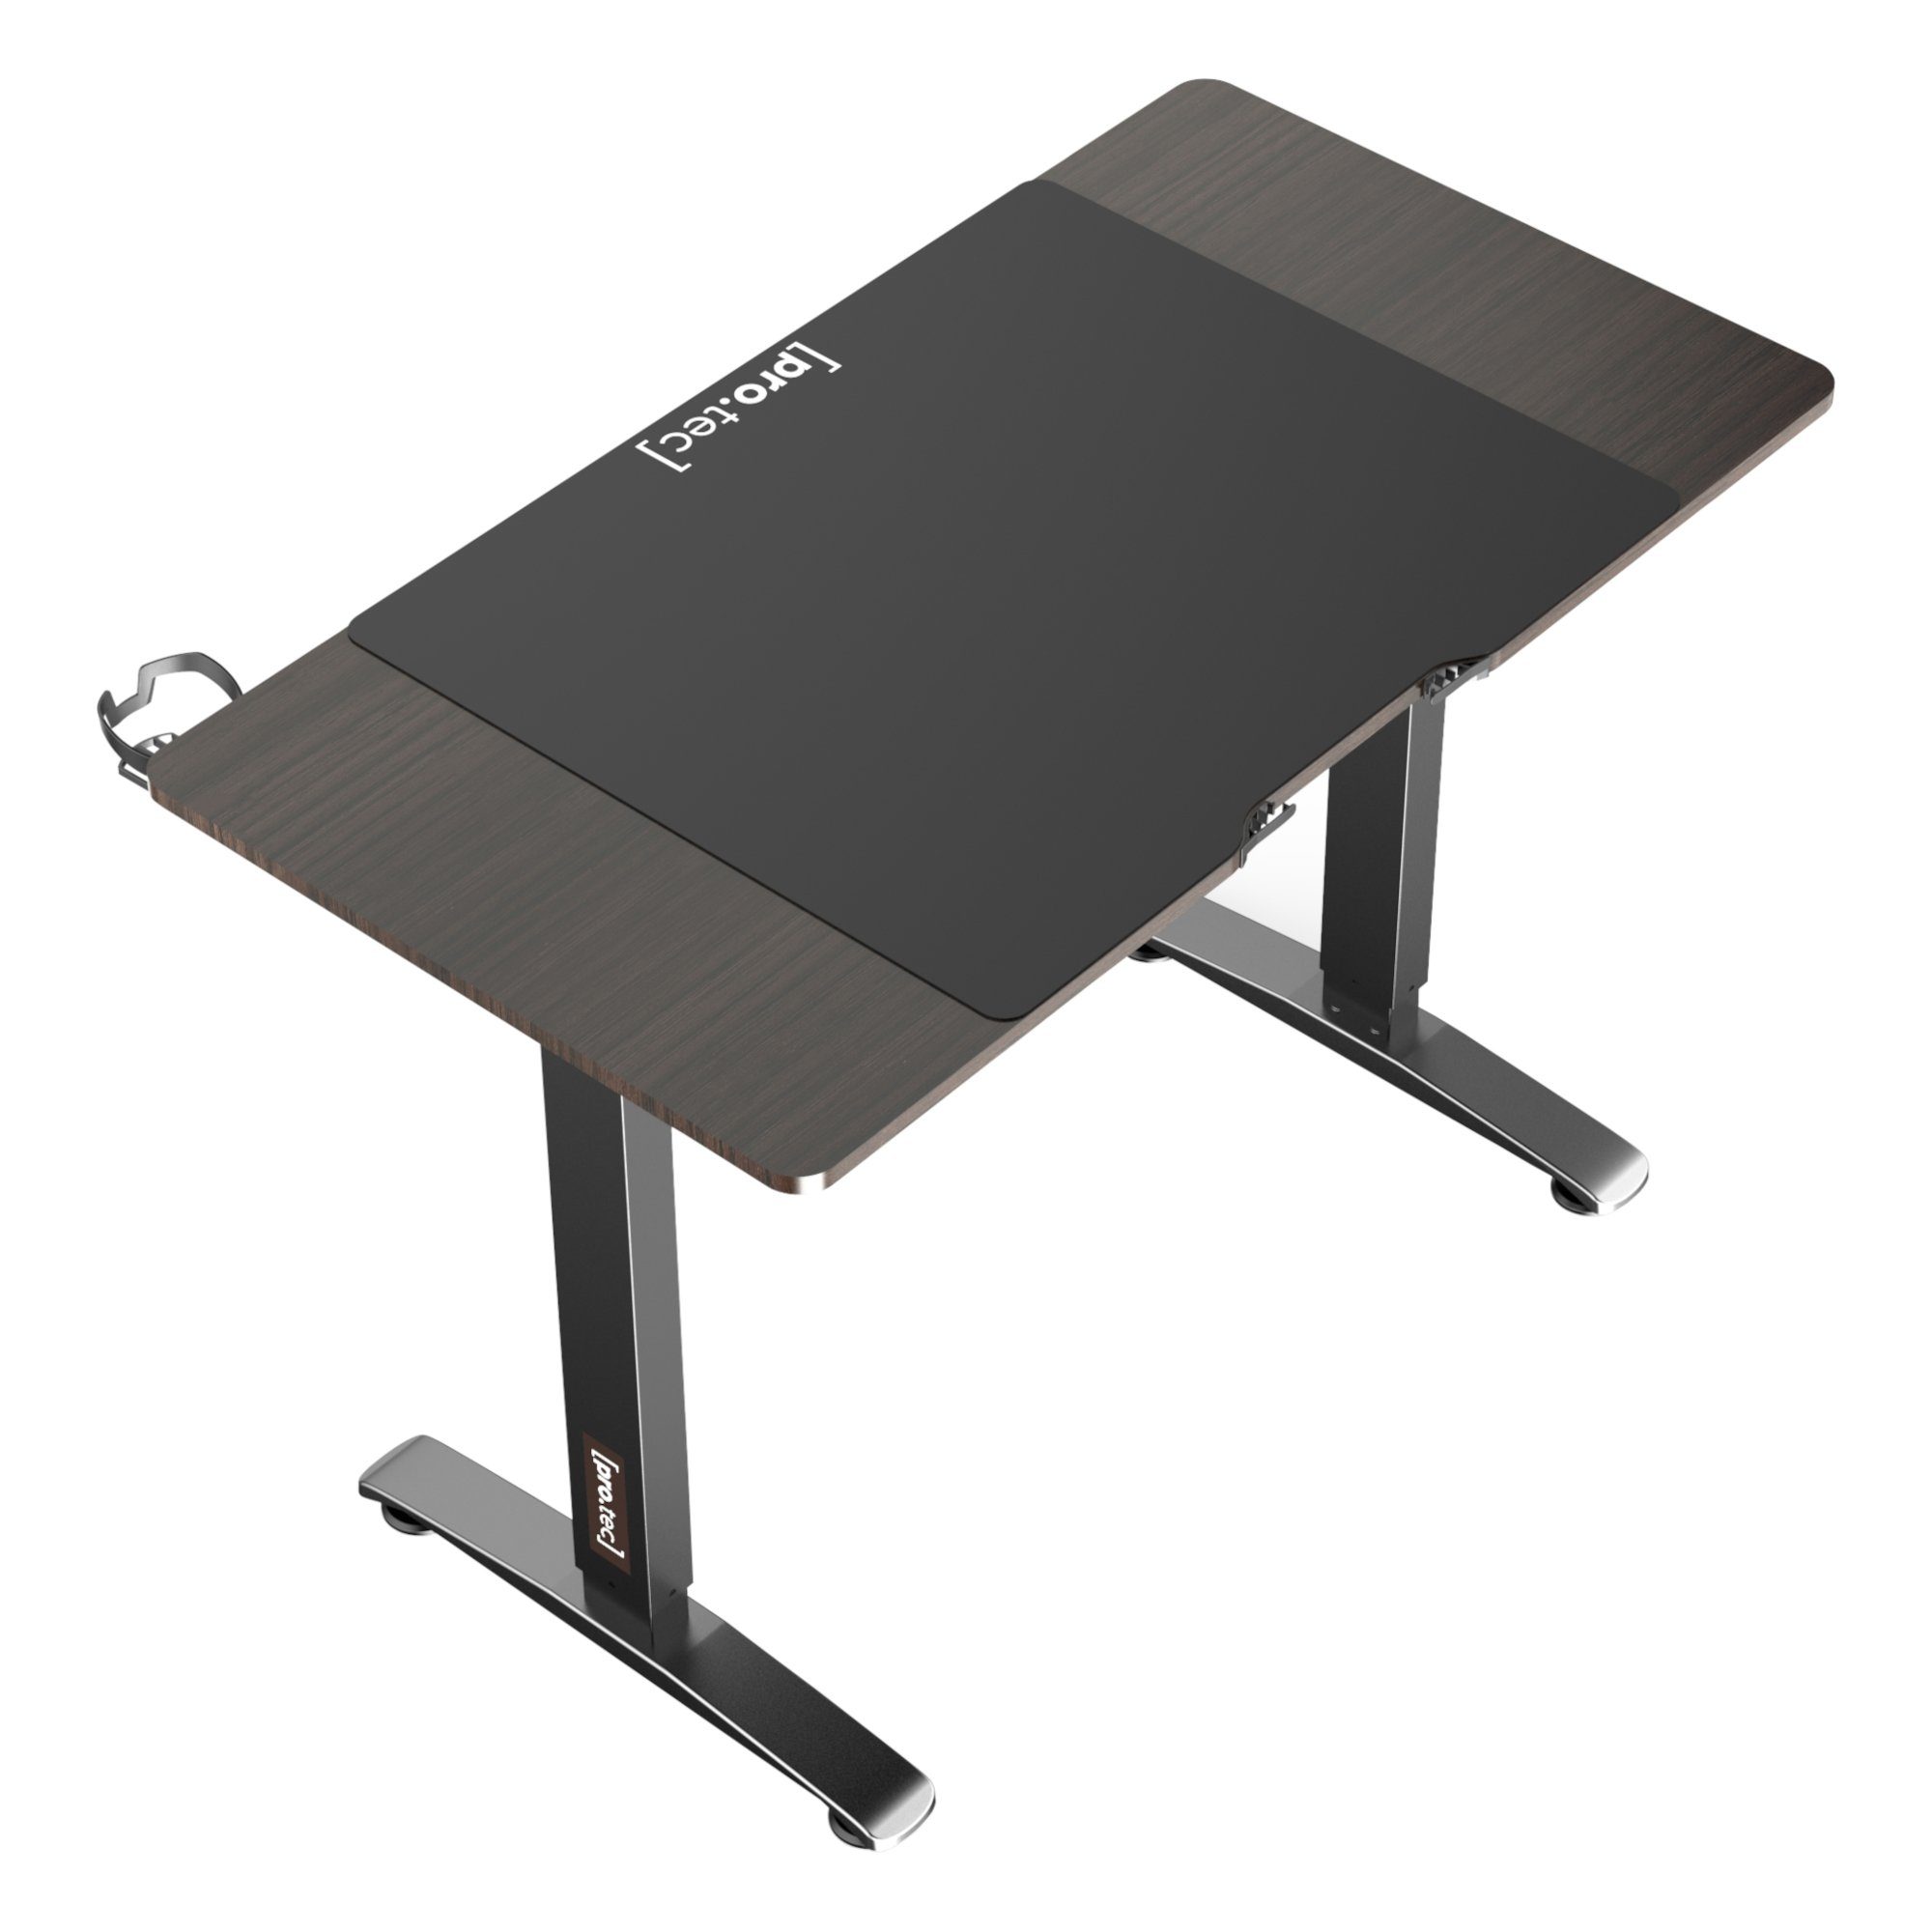 110x60 »Visalia« Walnuss-Optik Schreibtisch, schwarz Tisch pro.tec Elektrisch Walnuss-Optik Höhenverstellbarer |